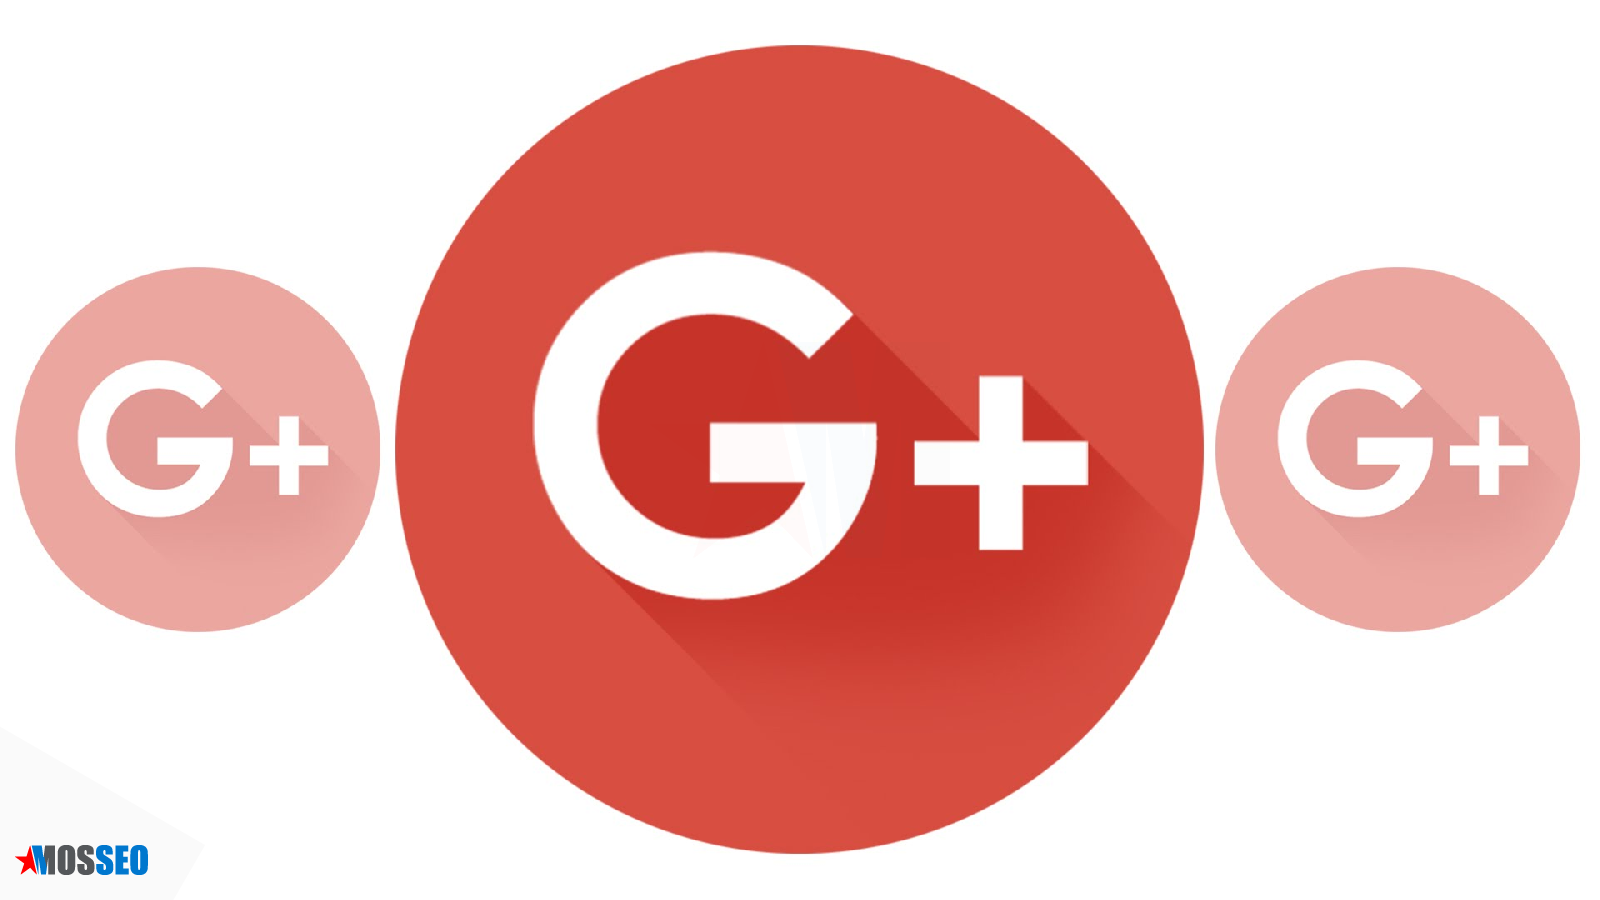 Гугл прекратит поддержку Google+